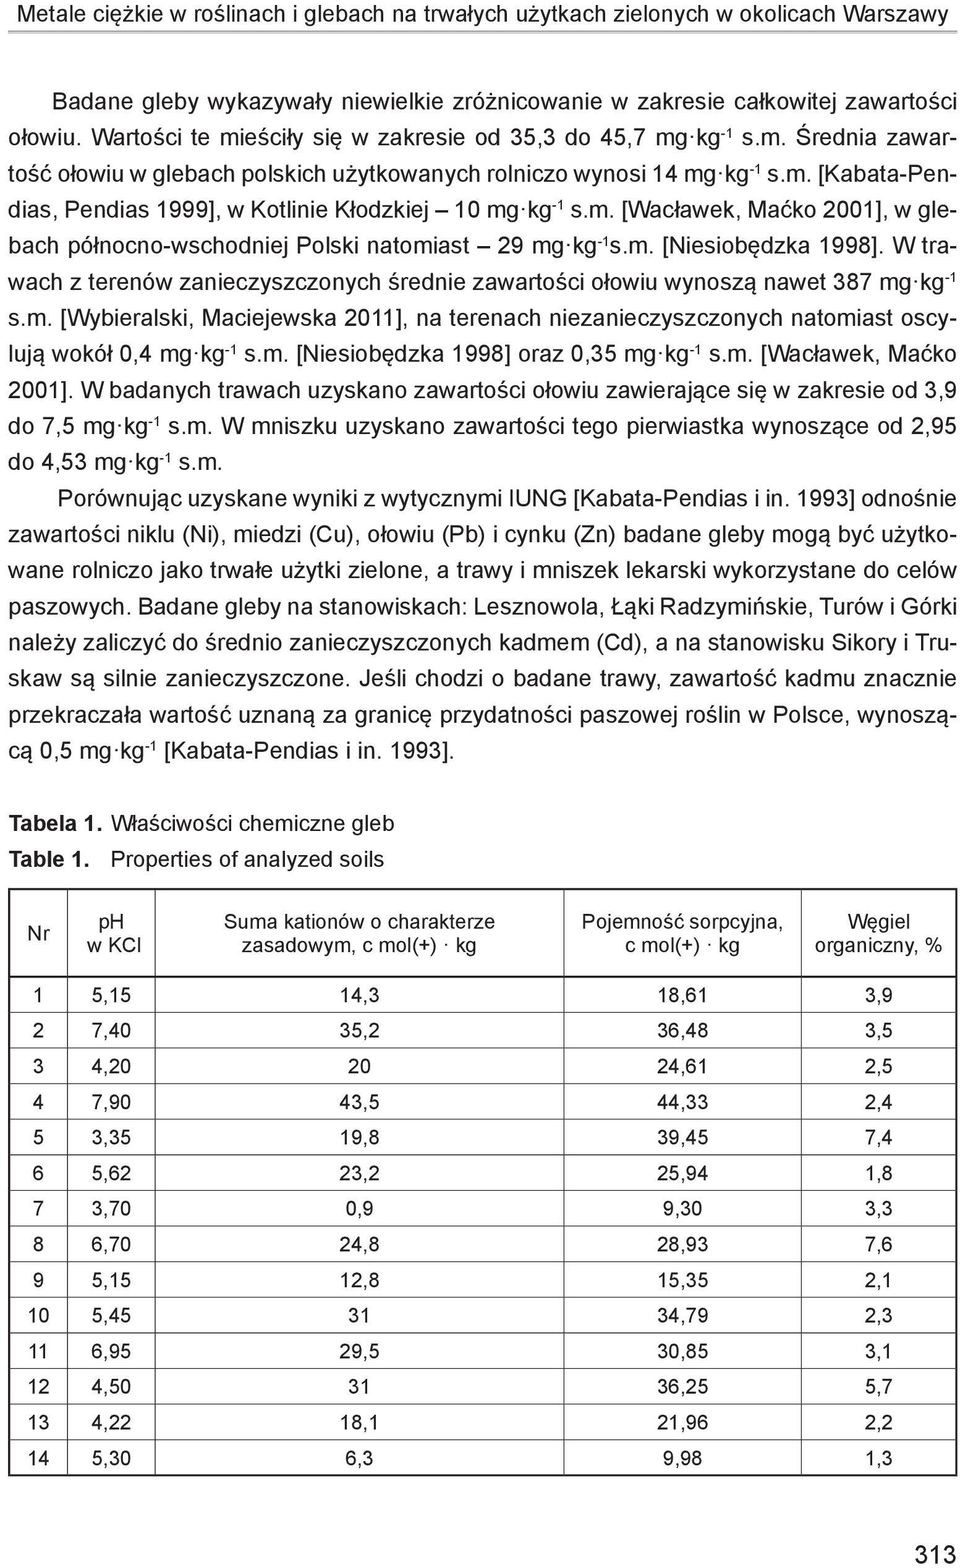 m. [Wacławek, Maćko 2001], w glebach północno-wschodniej Polski natomiast 29 mg kg -1 s.m. [Niesiobędzka 1998].